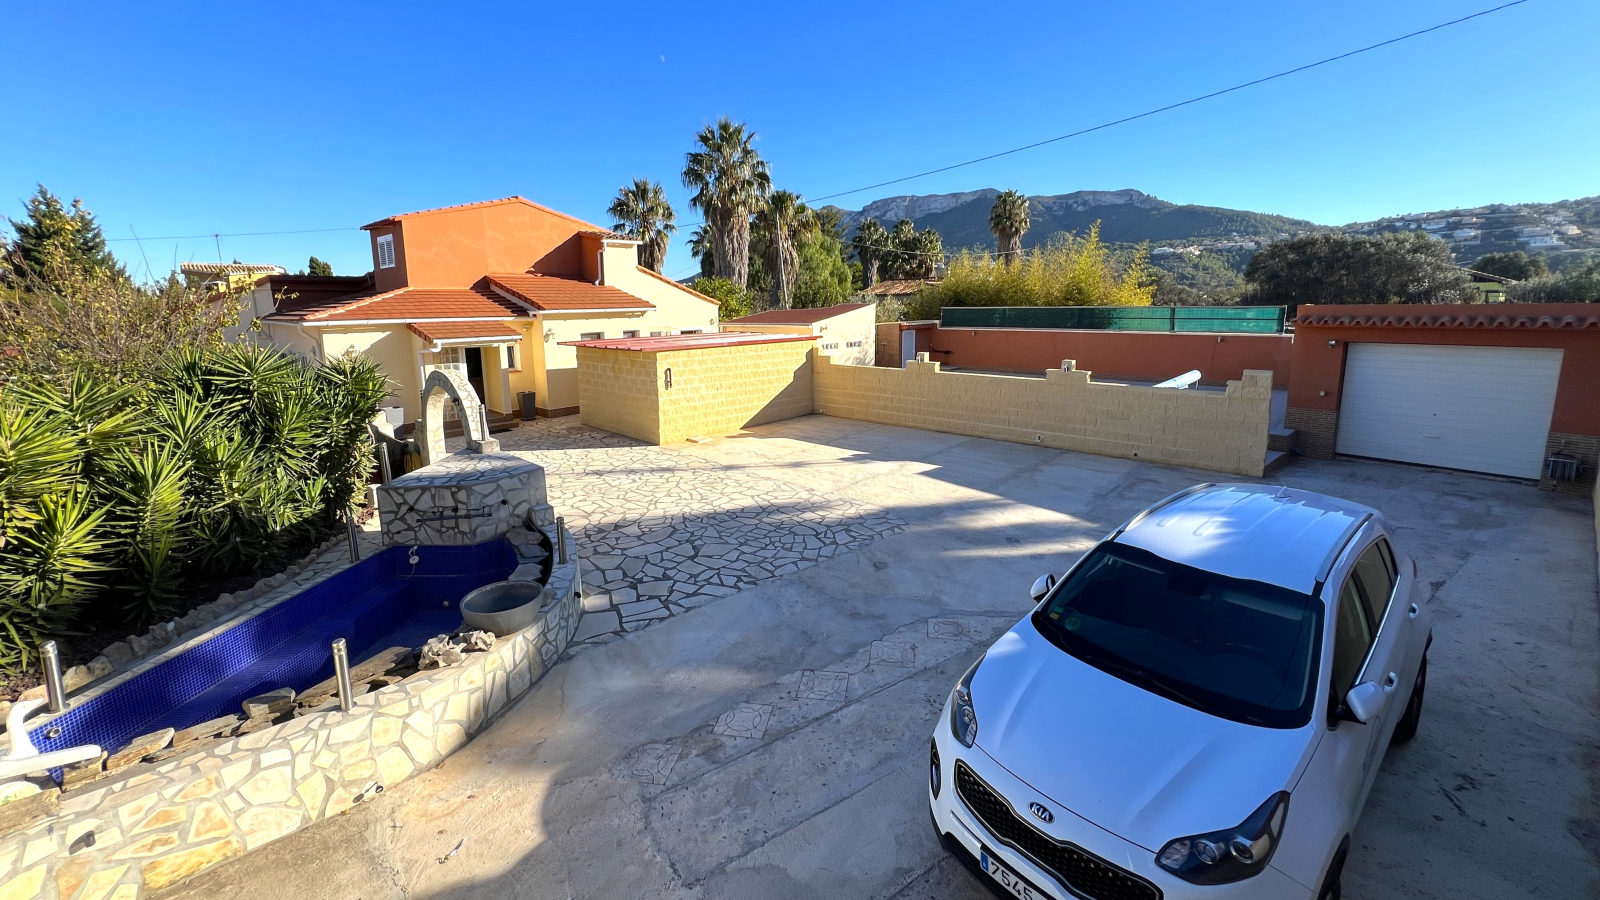 Villa in ruhiger Lage mit hoher technischer Ausstattung, beheizbarem Pool, Garage, etc.